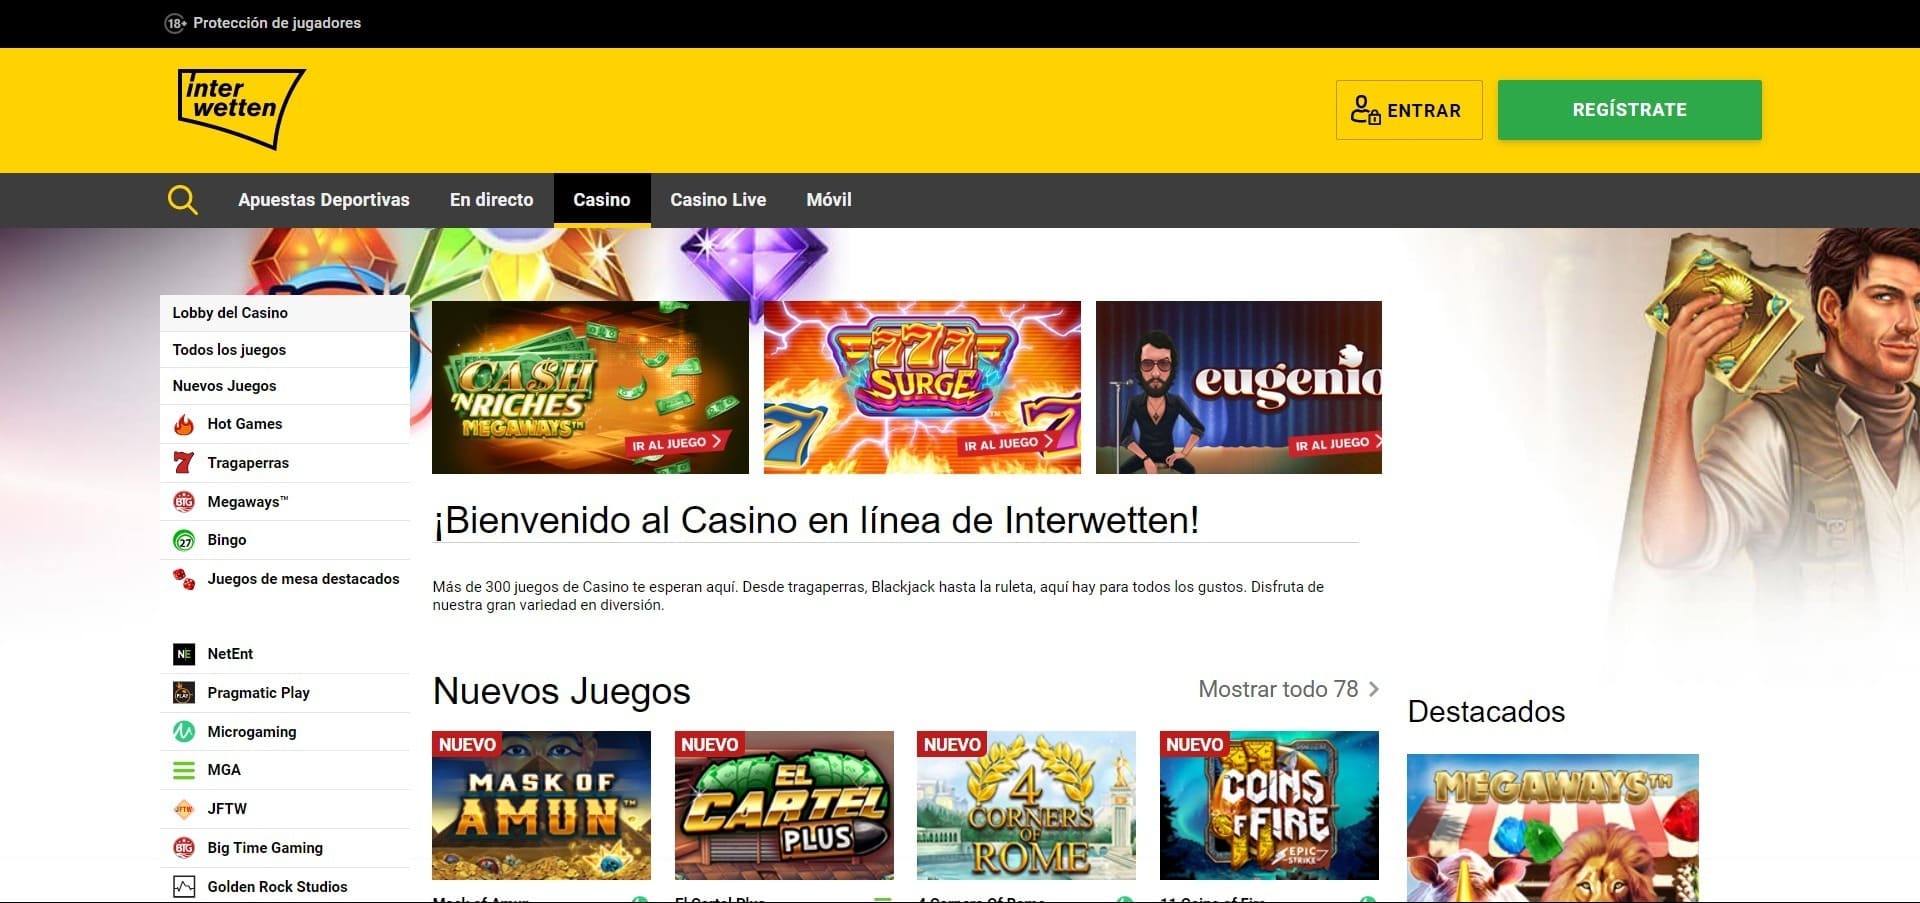 Sitio web oficial de la Interwetten Casino